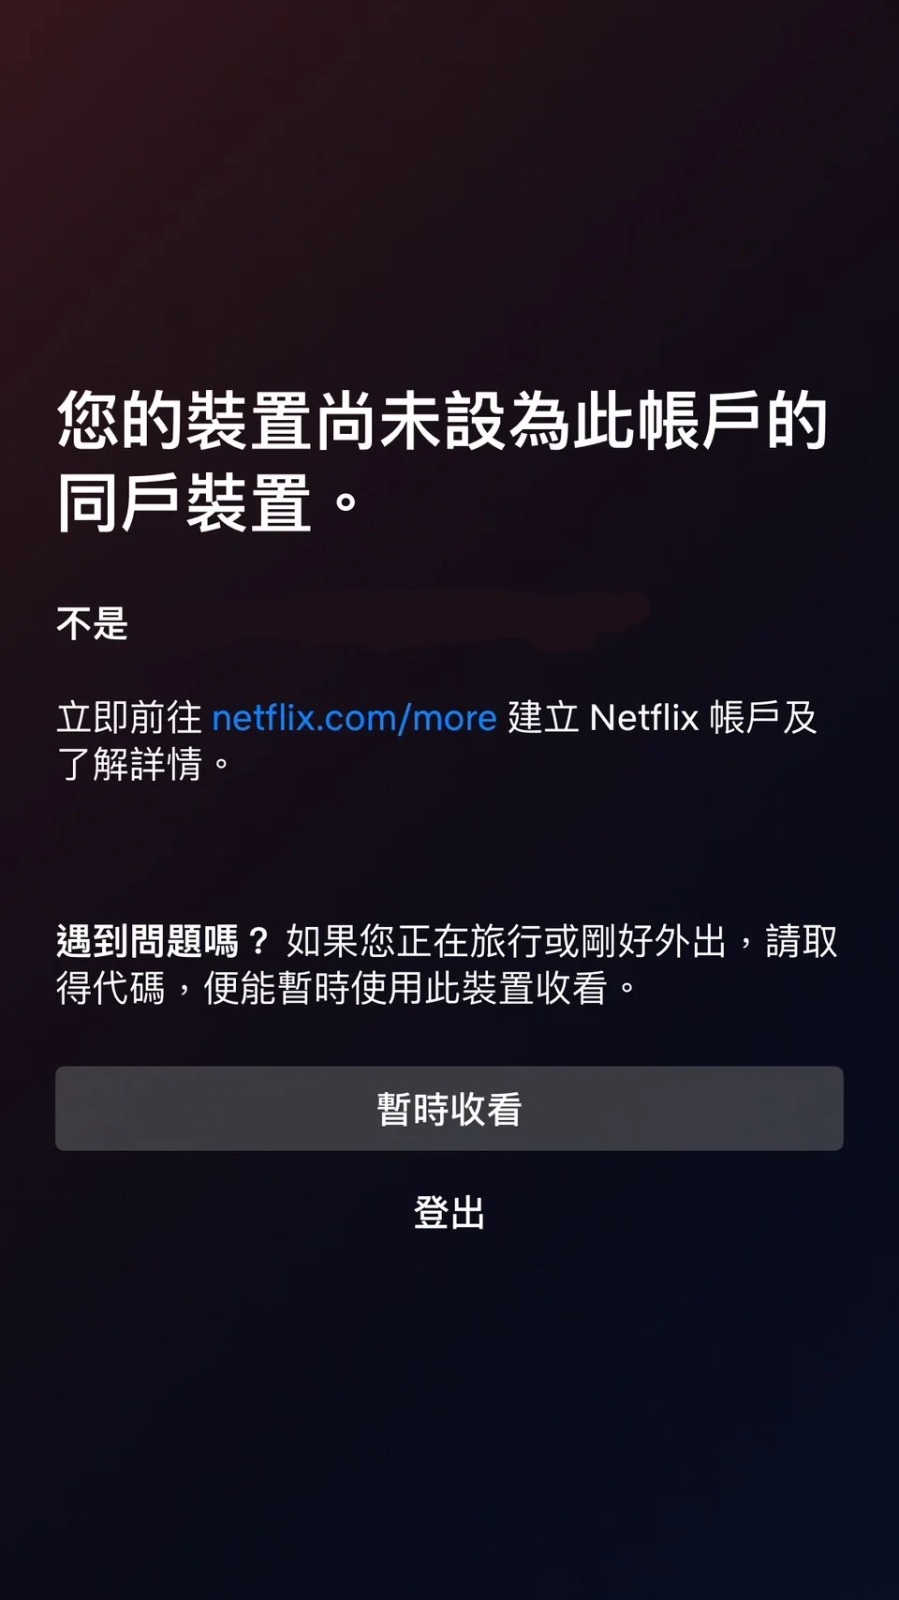 近日香港及台灣網民發現，Netflix突然無法觀看，並彈出「您的裝置尚未設為此帳戶的同戶裝置」通知，並且要求設定為同戶裝置。用戶僅能選擇取得代碼暫時收看或是登出。